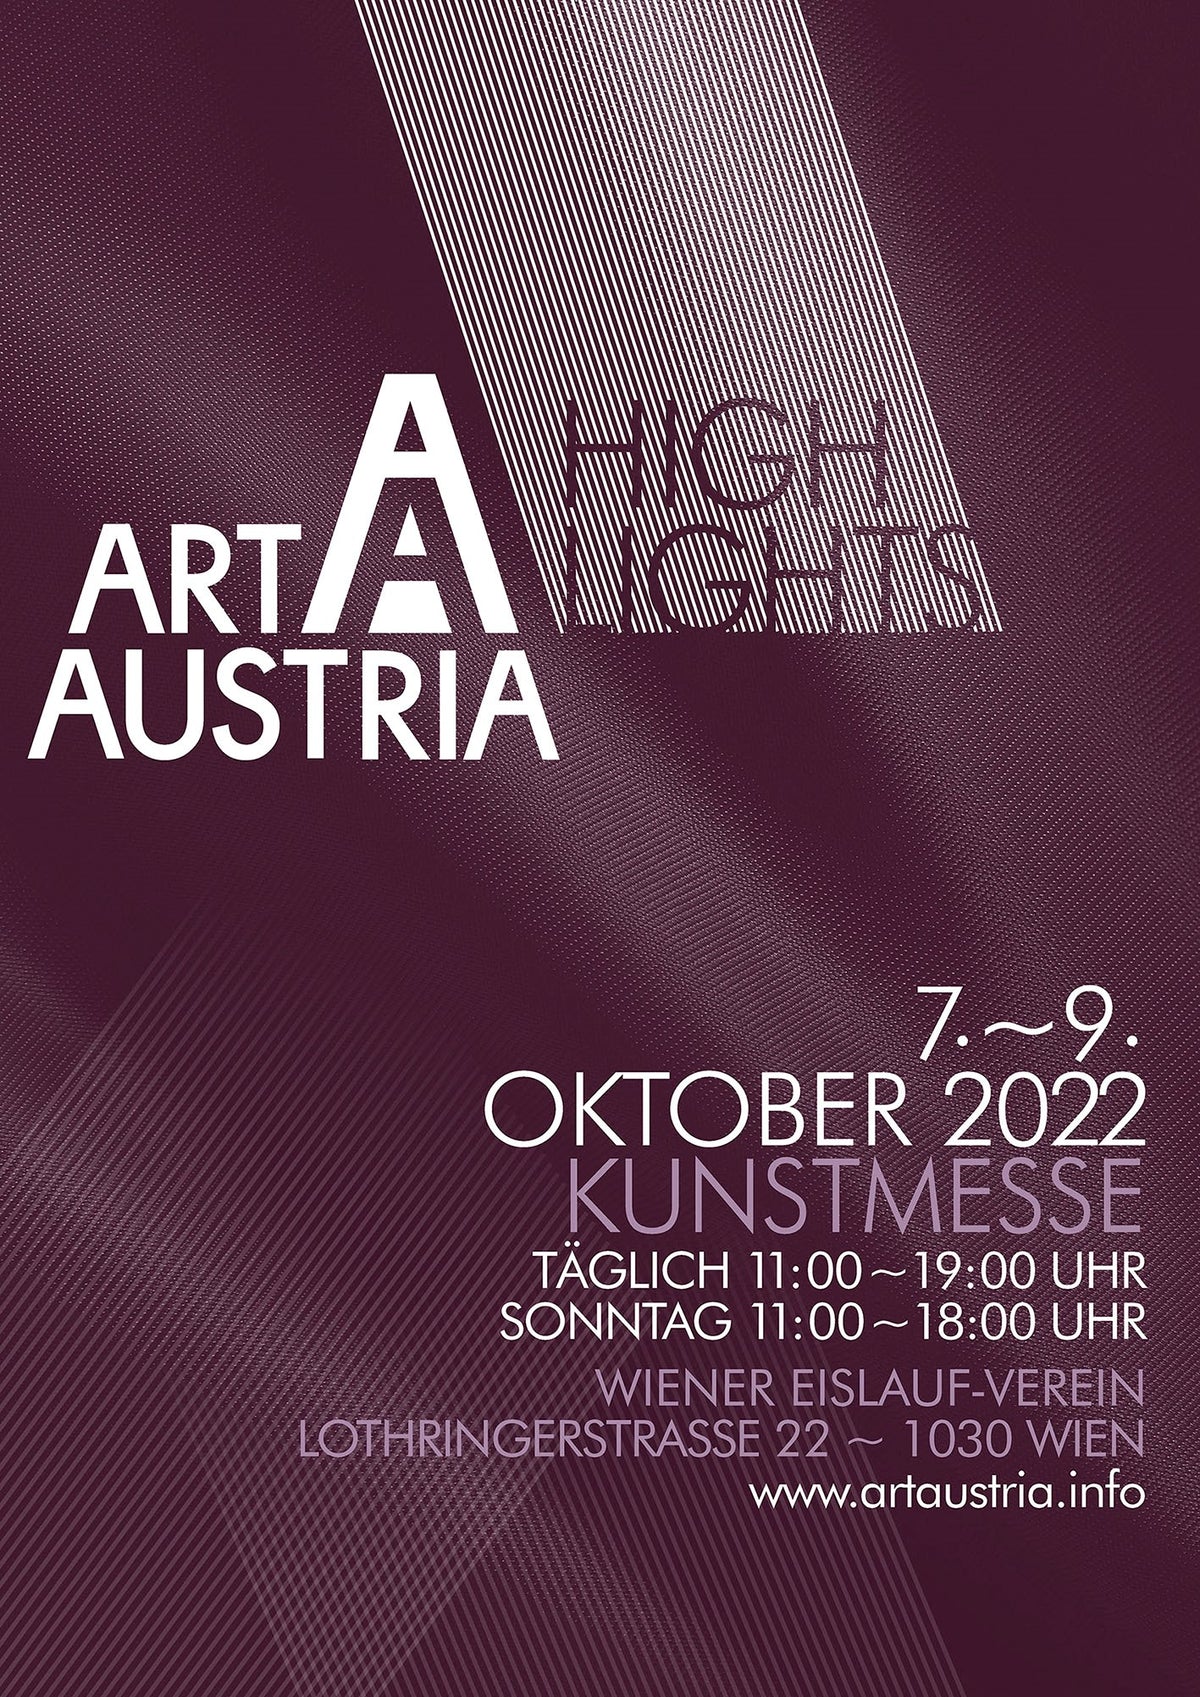 Art Austria Highlights